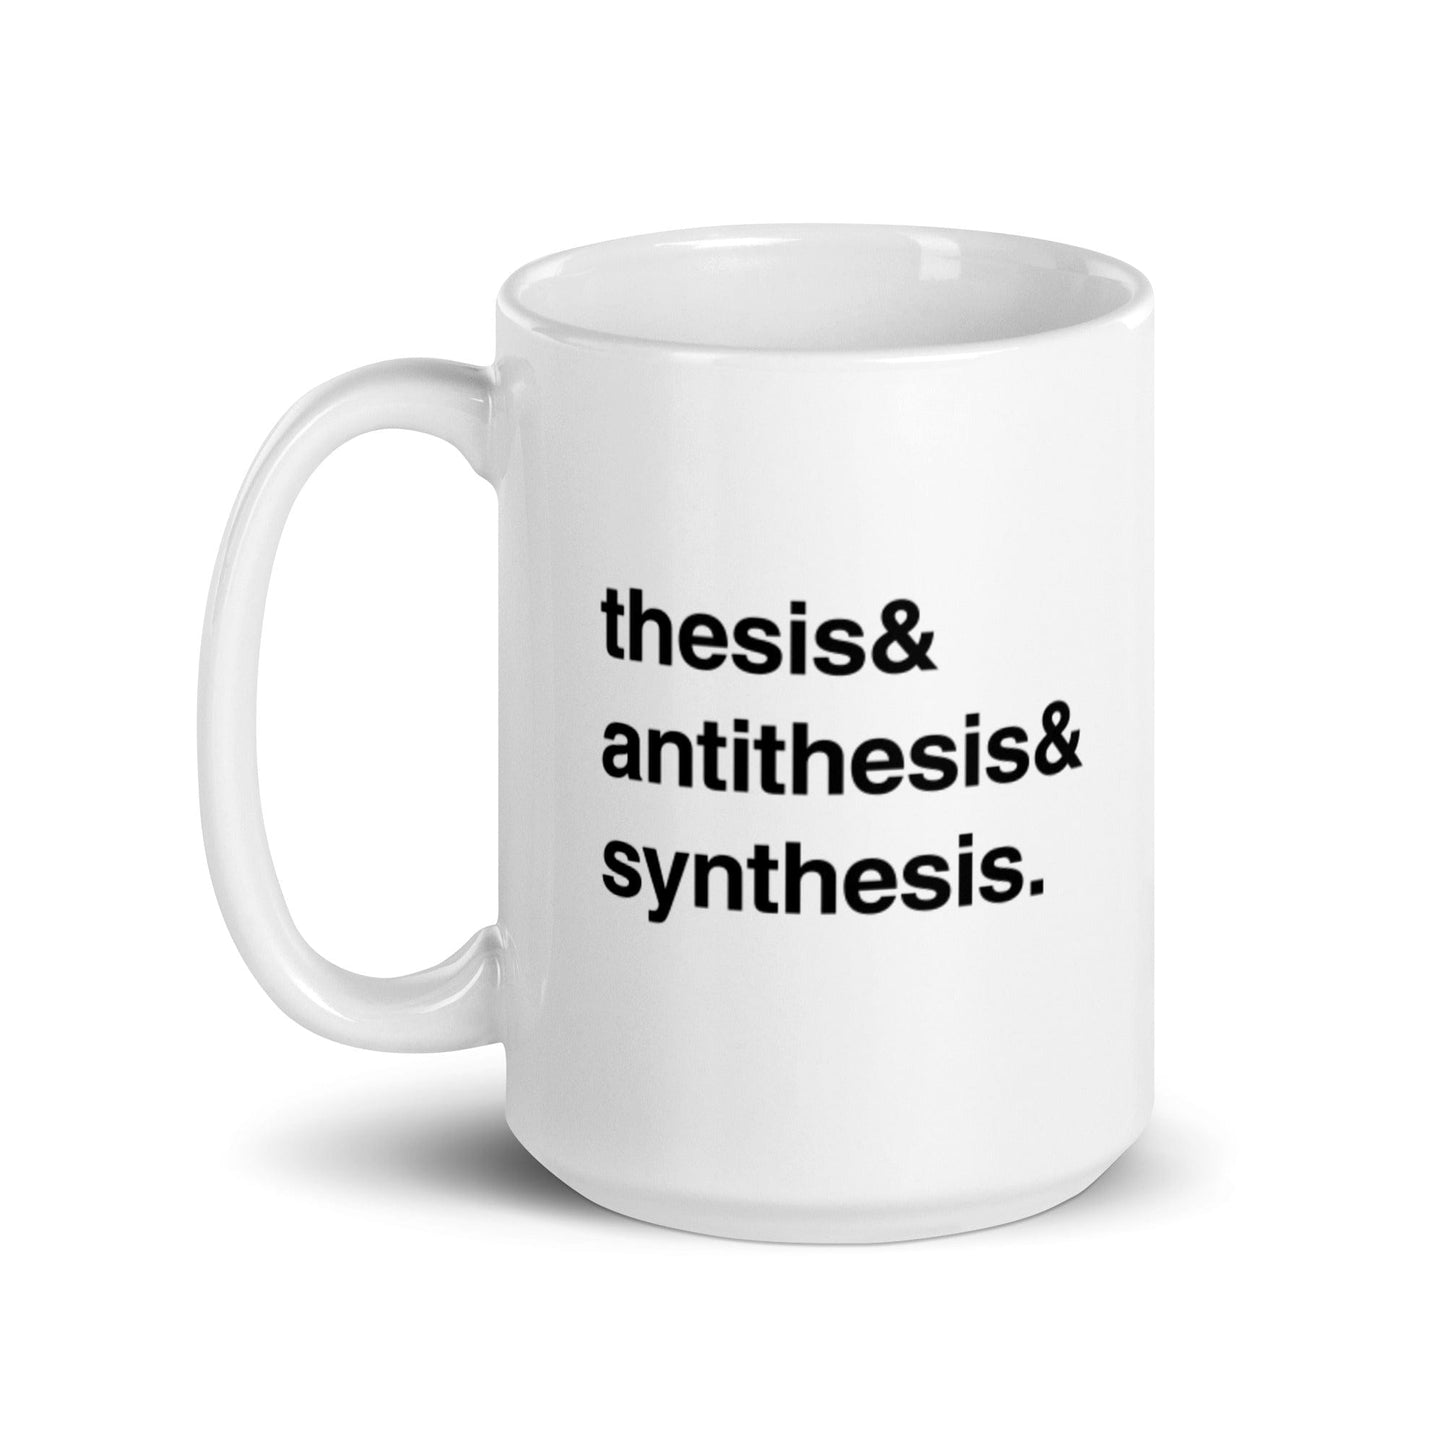 Thesis & Antithesis & Synthesis - Mug